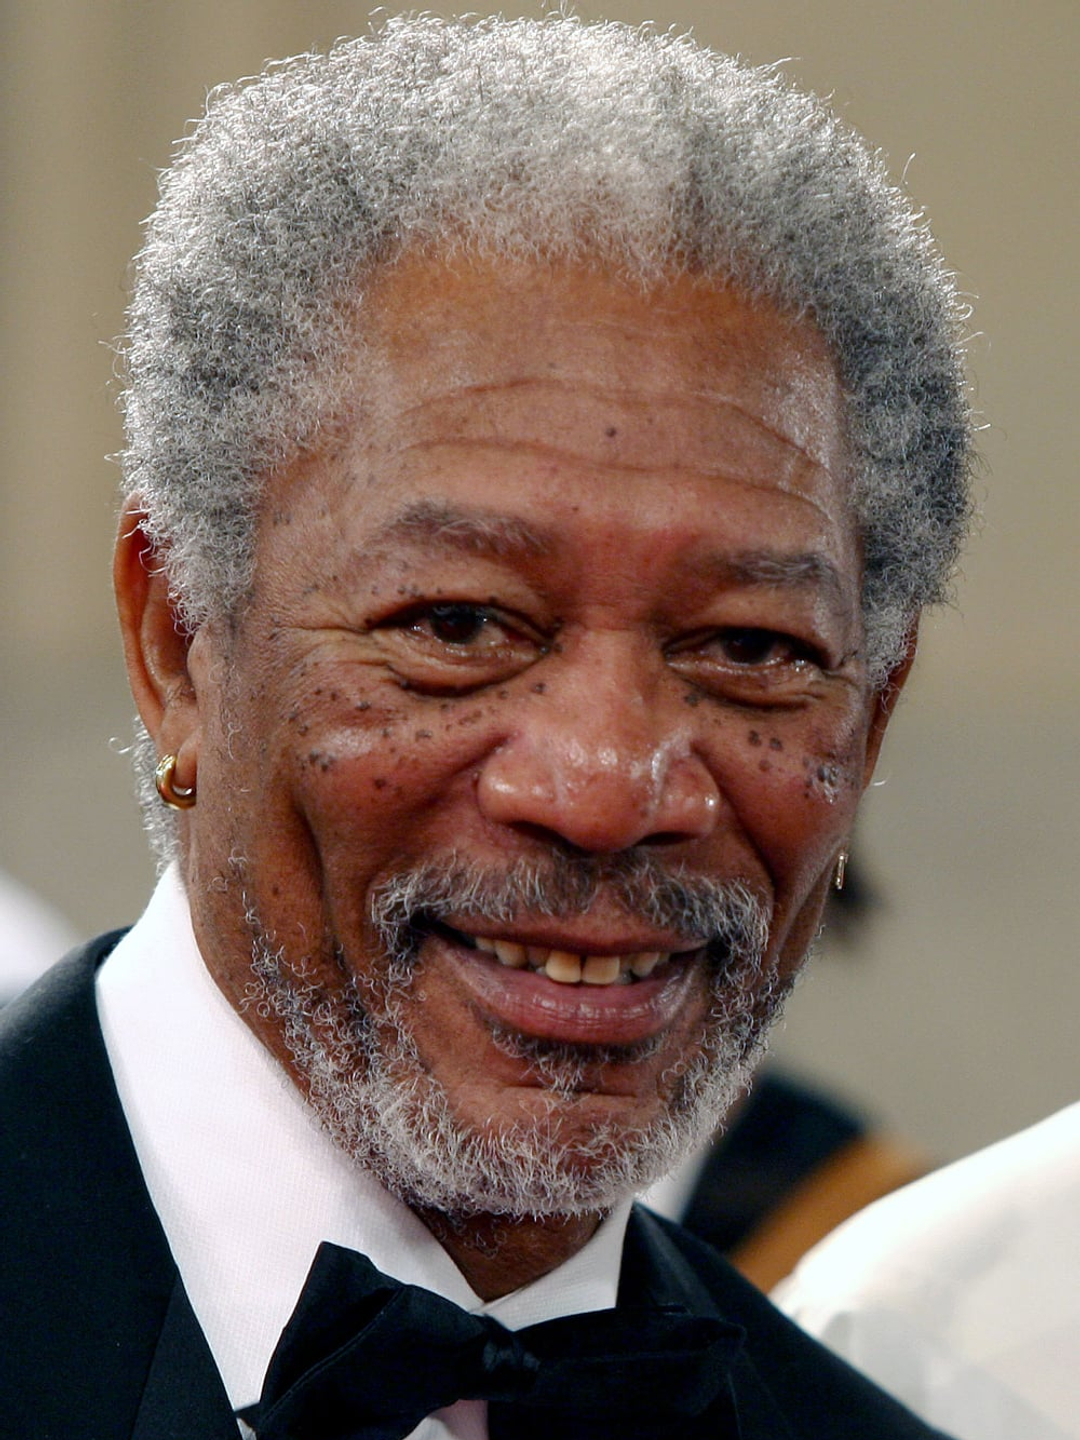 Morgan Freeman current look